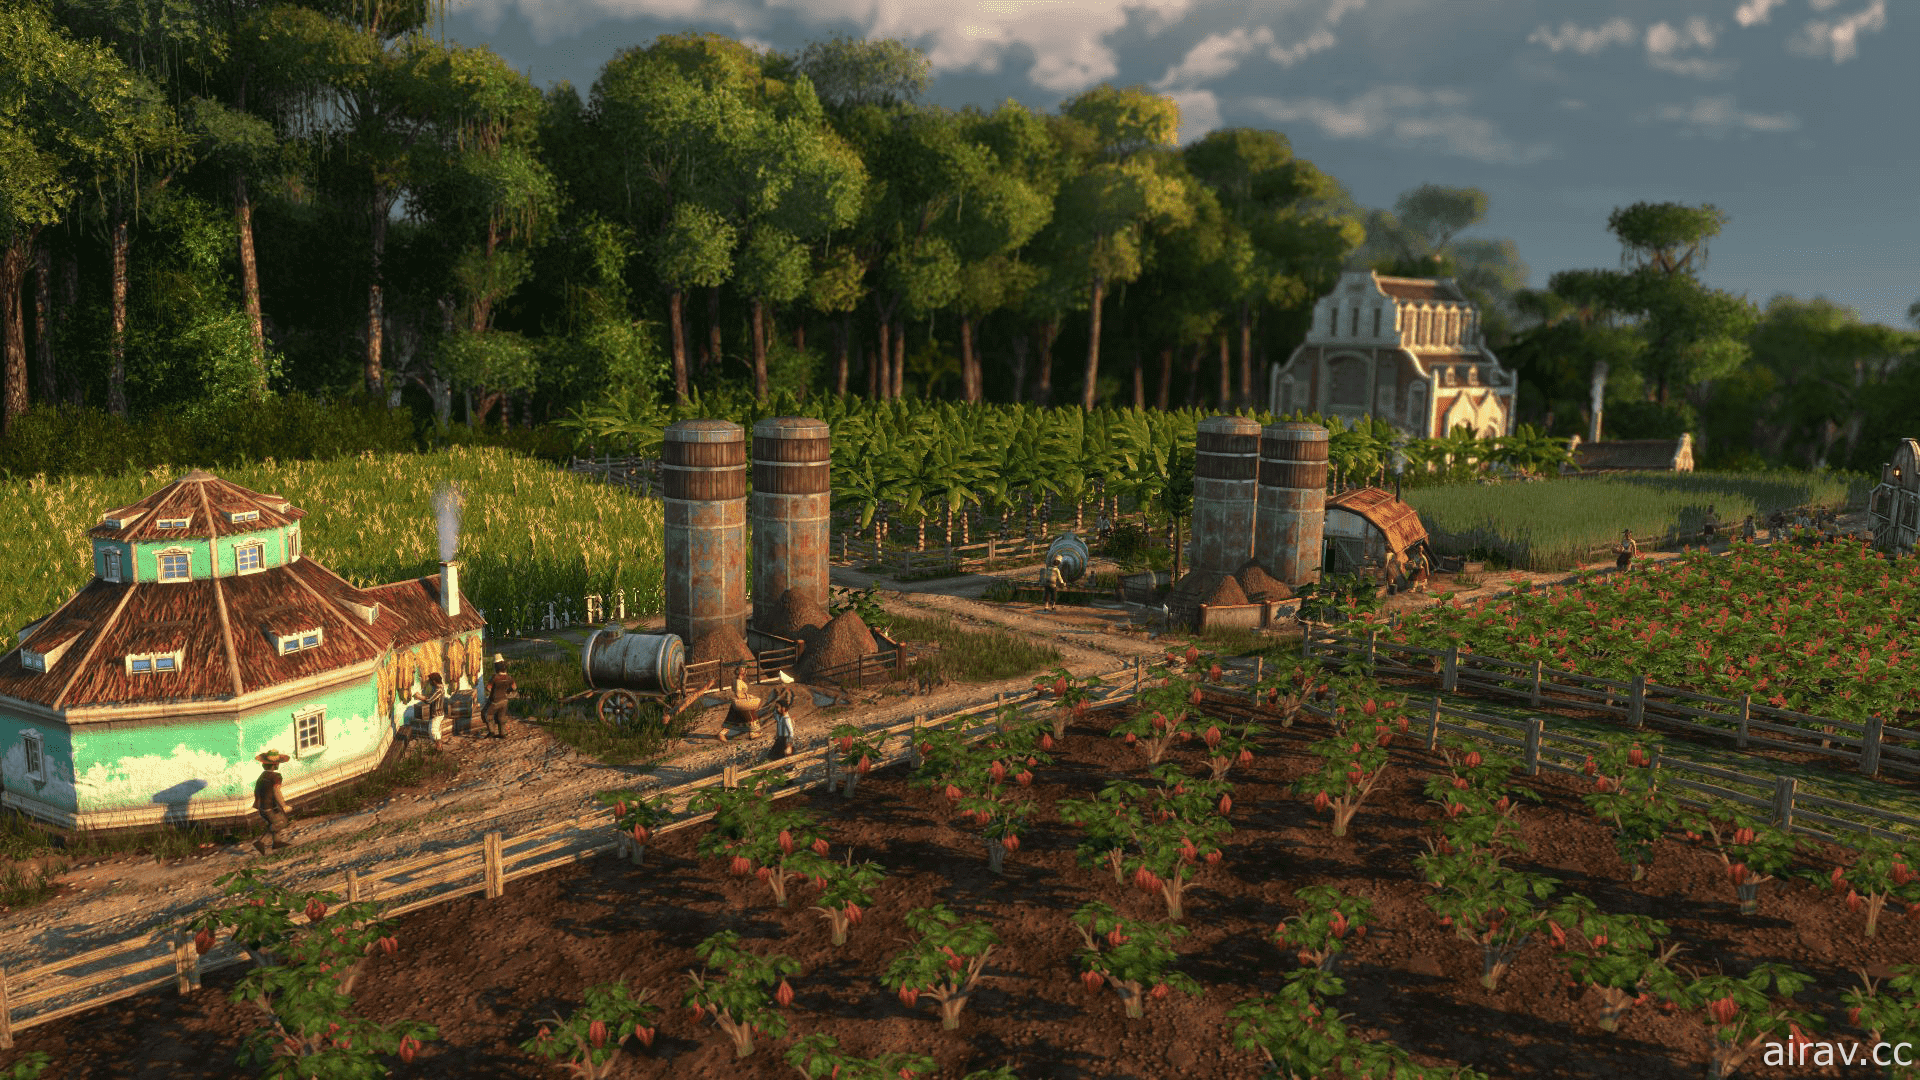 《美麗新世界 1800》釋出擴充內容「改變的種子」 即日起展開免費遊玩週